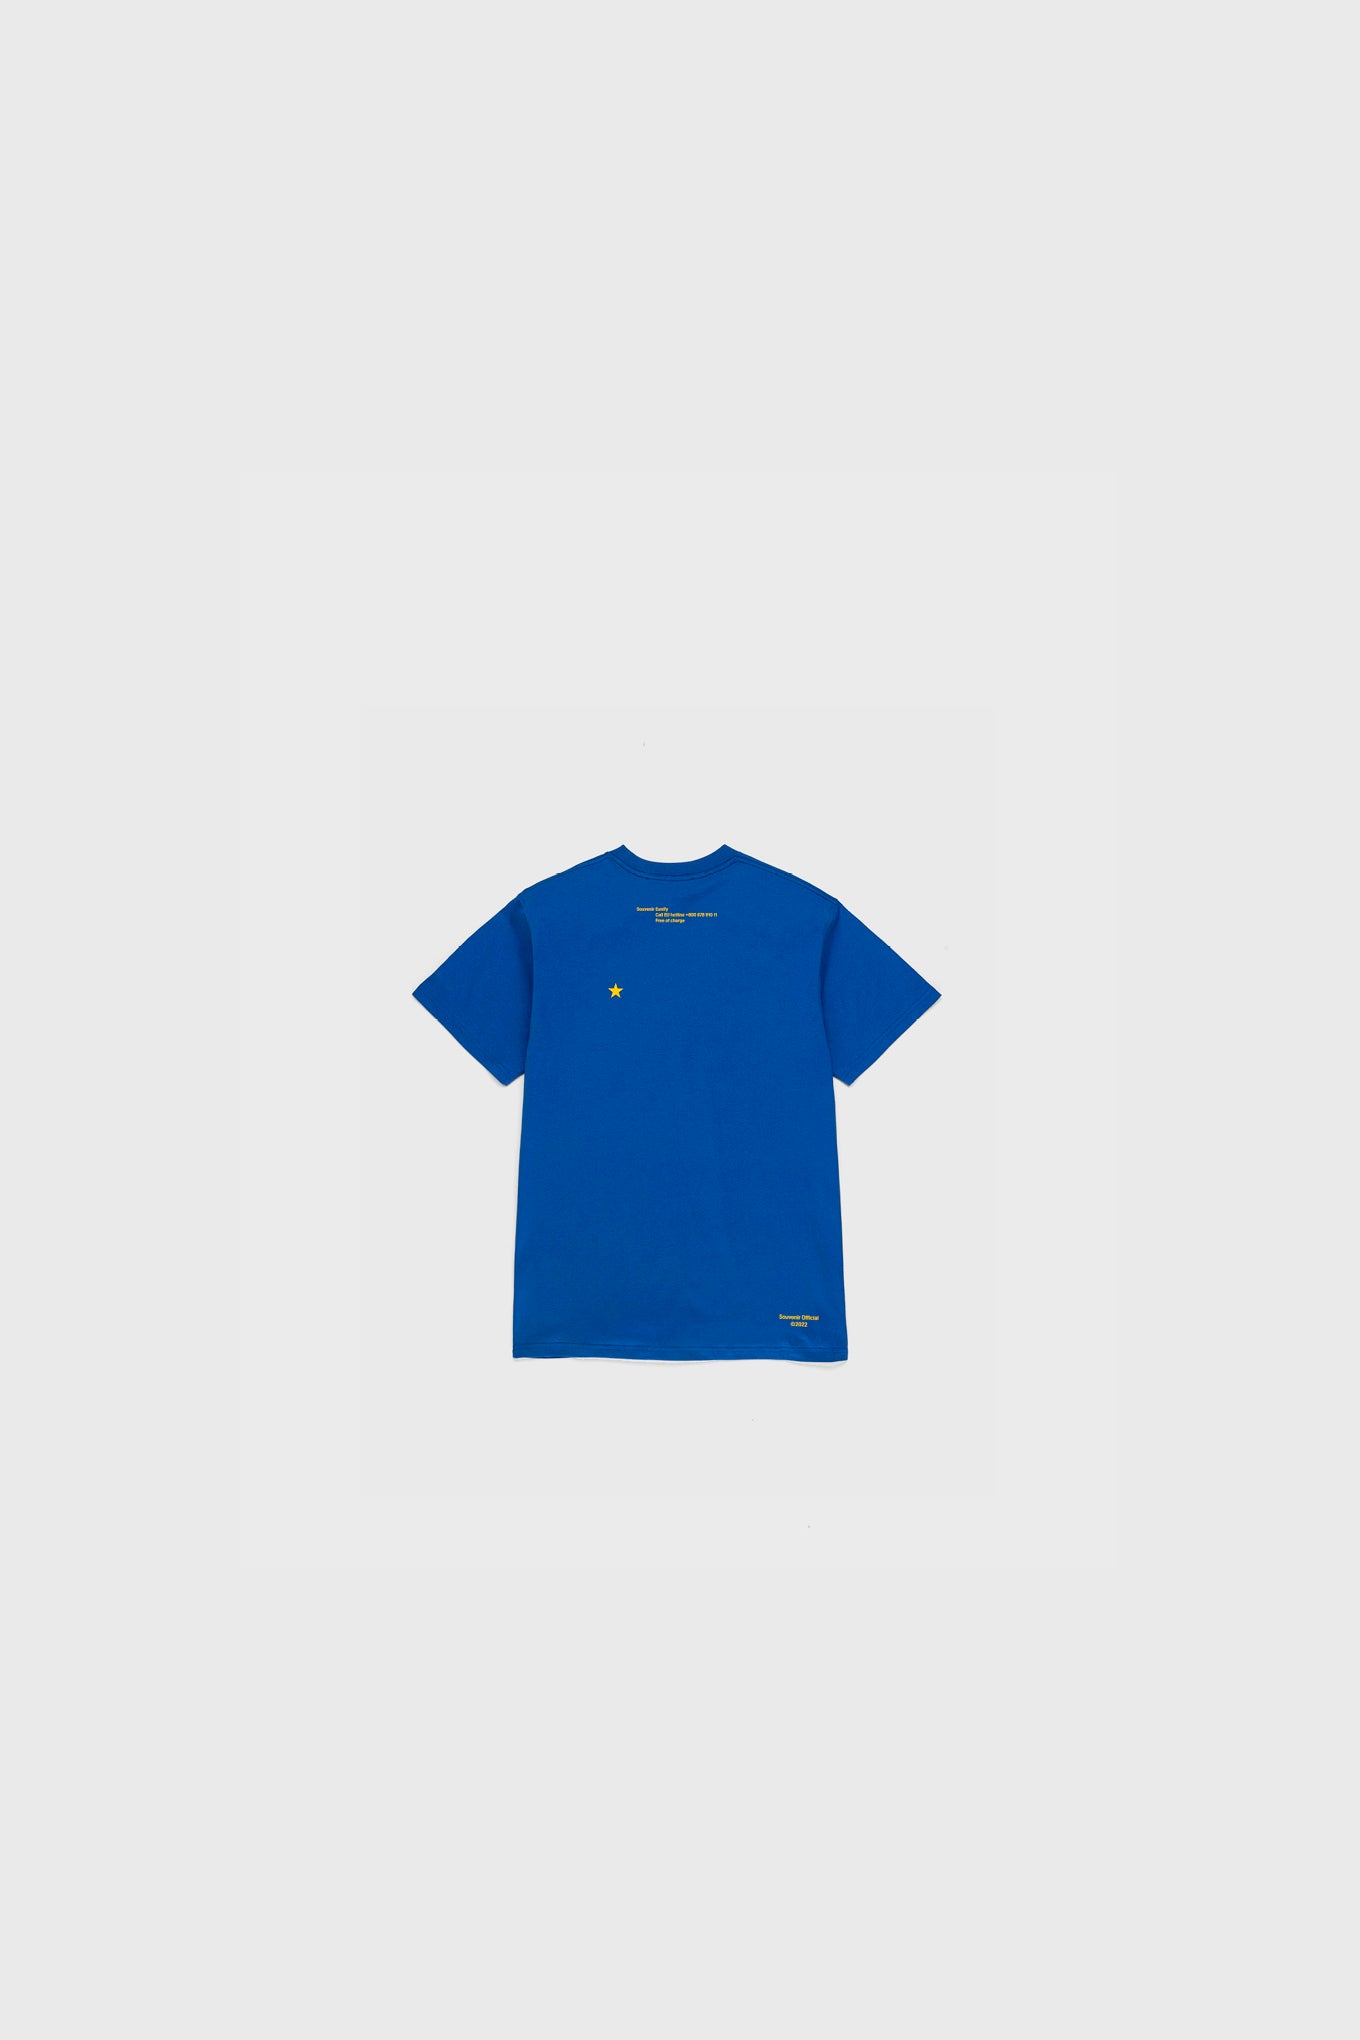 Eunify T-Shirt Blue